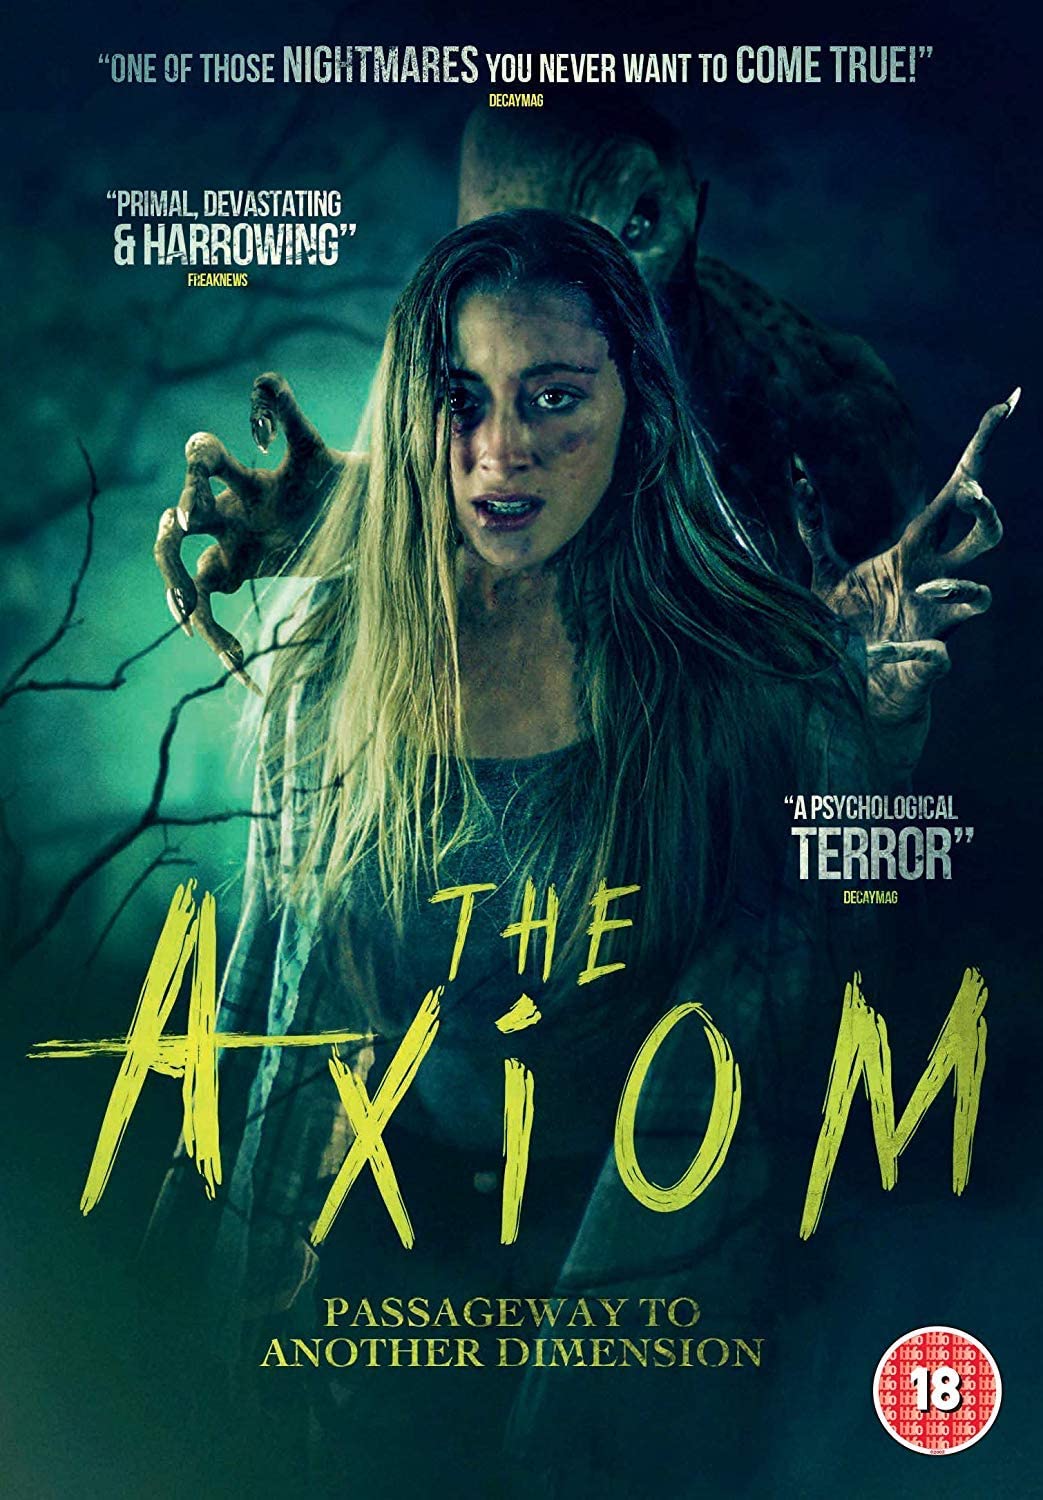 The Axiom - Horror [DVD]